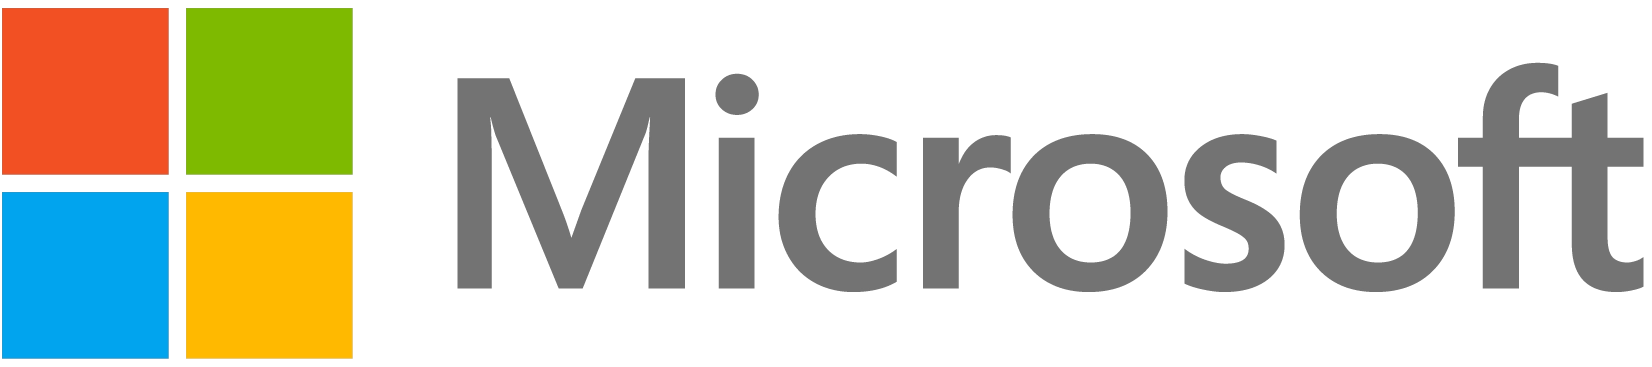 Microsoft – фото, видео, купить в Минске с доставкой по Беларуси – 360shop.by